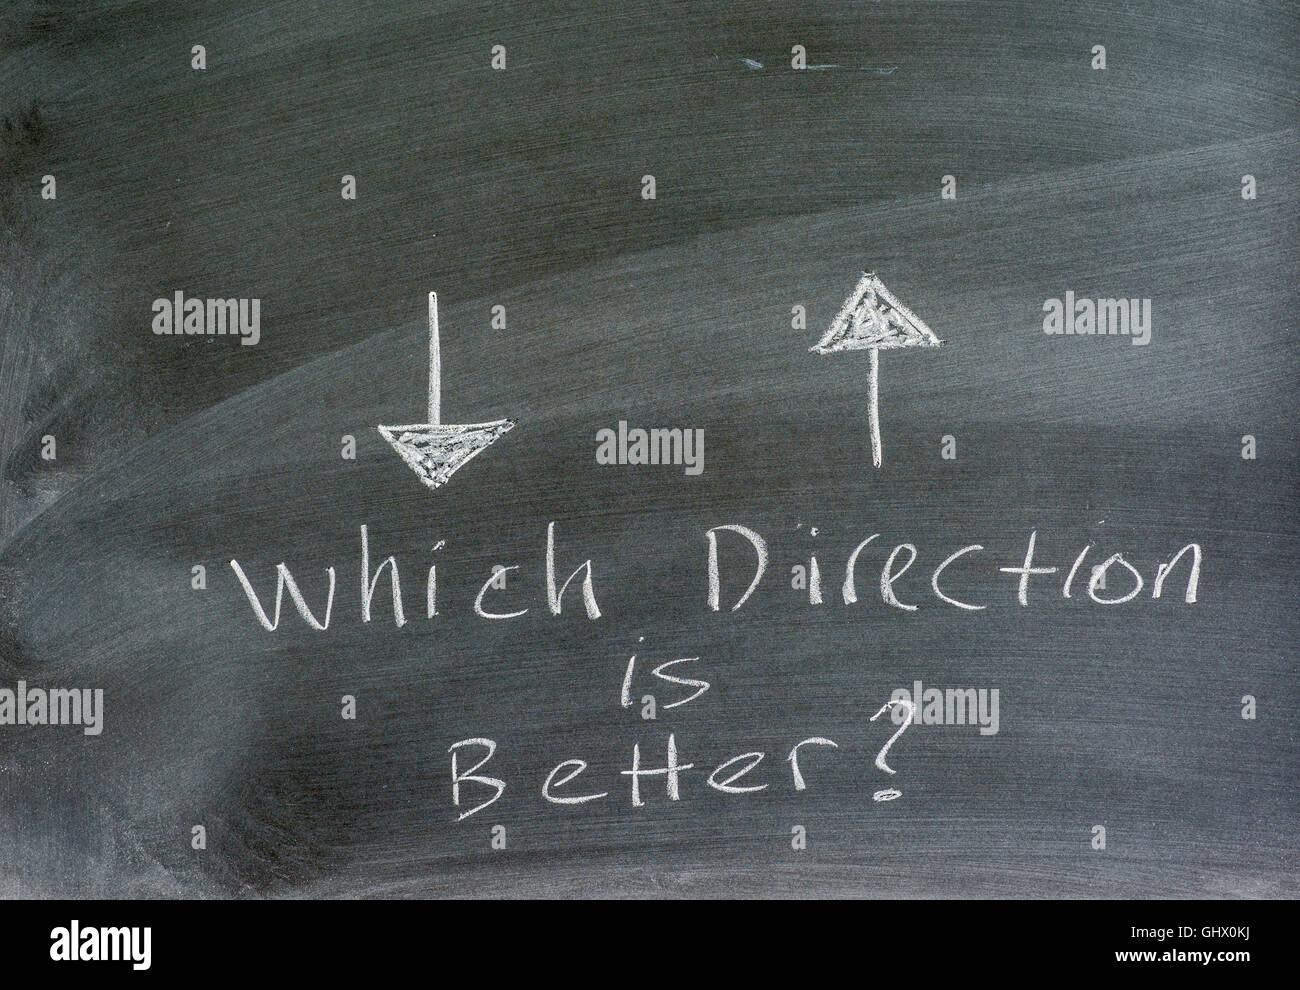 Flechas direccionales escrito en una pizarra, conceptual, la pregunta. Foto de stock